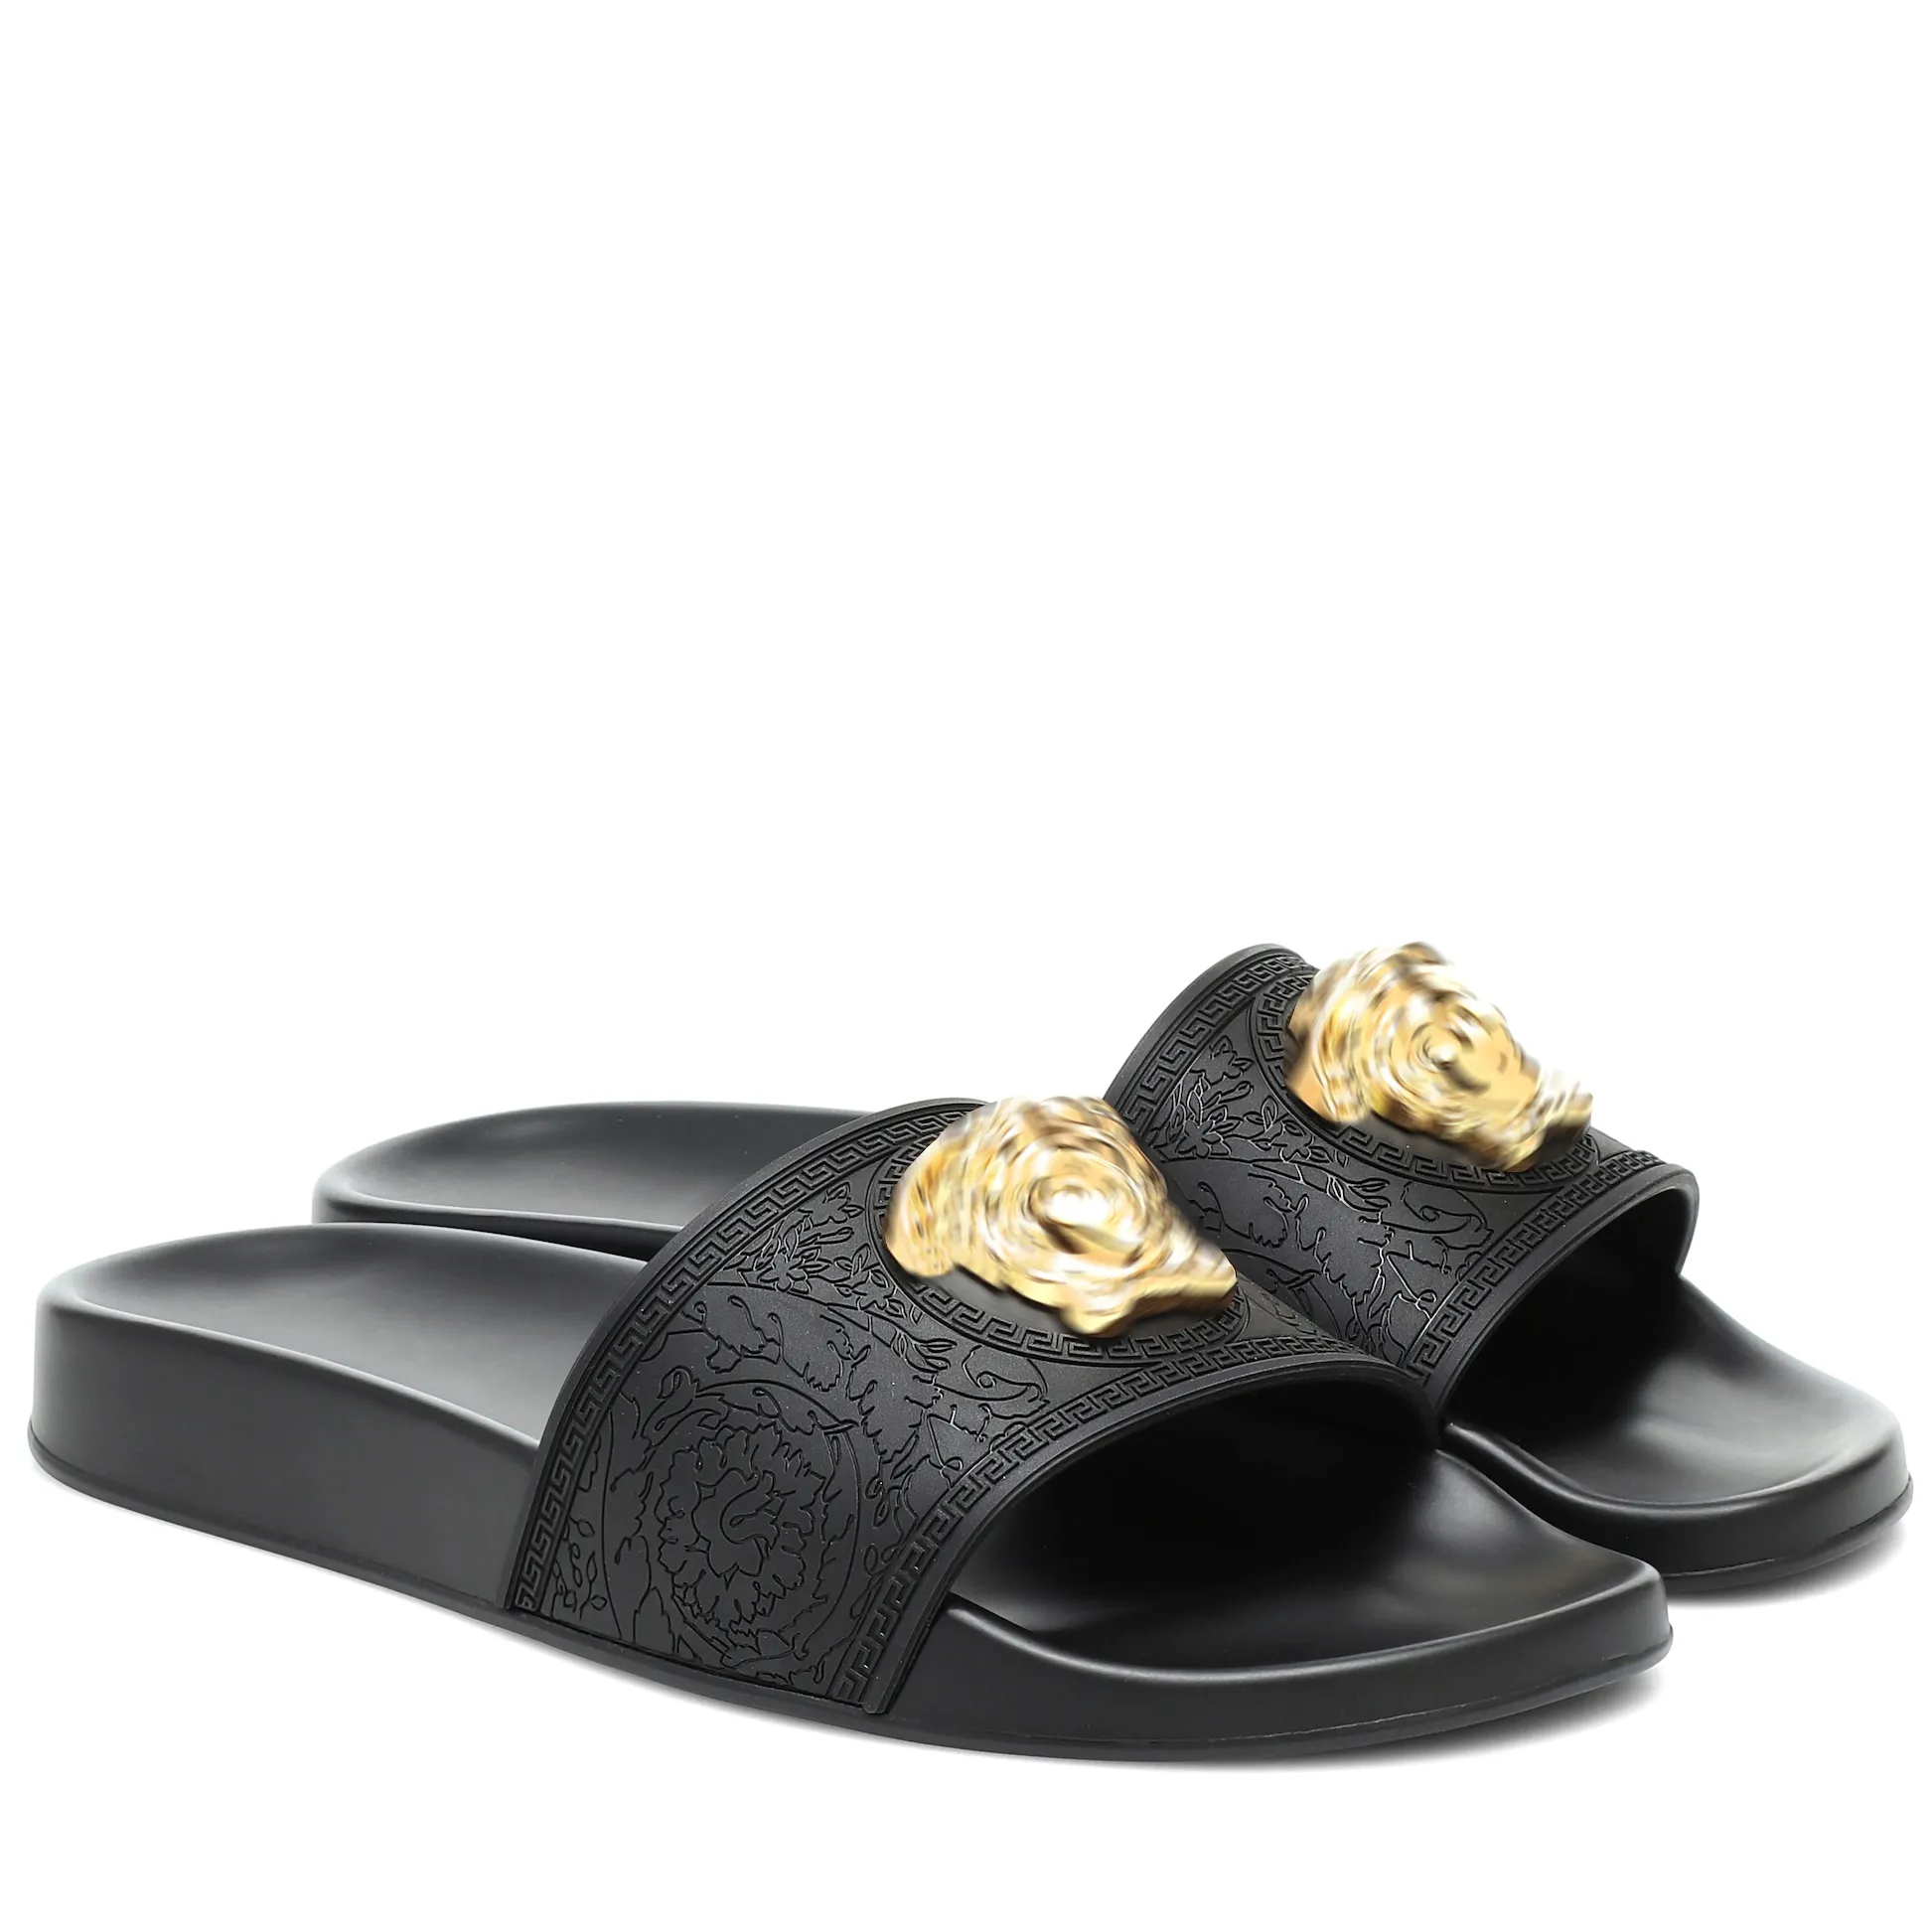 럭셔리 디자이너 슬리퍼 새로운 패션 클래식 Palazzo Sandals 캐주얼 신발 뮬 남자 여자 샌들 슬라이더 금속 로고 슬리퍼 여름 플랫폼 플랫 슬라이드 도매